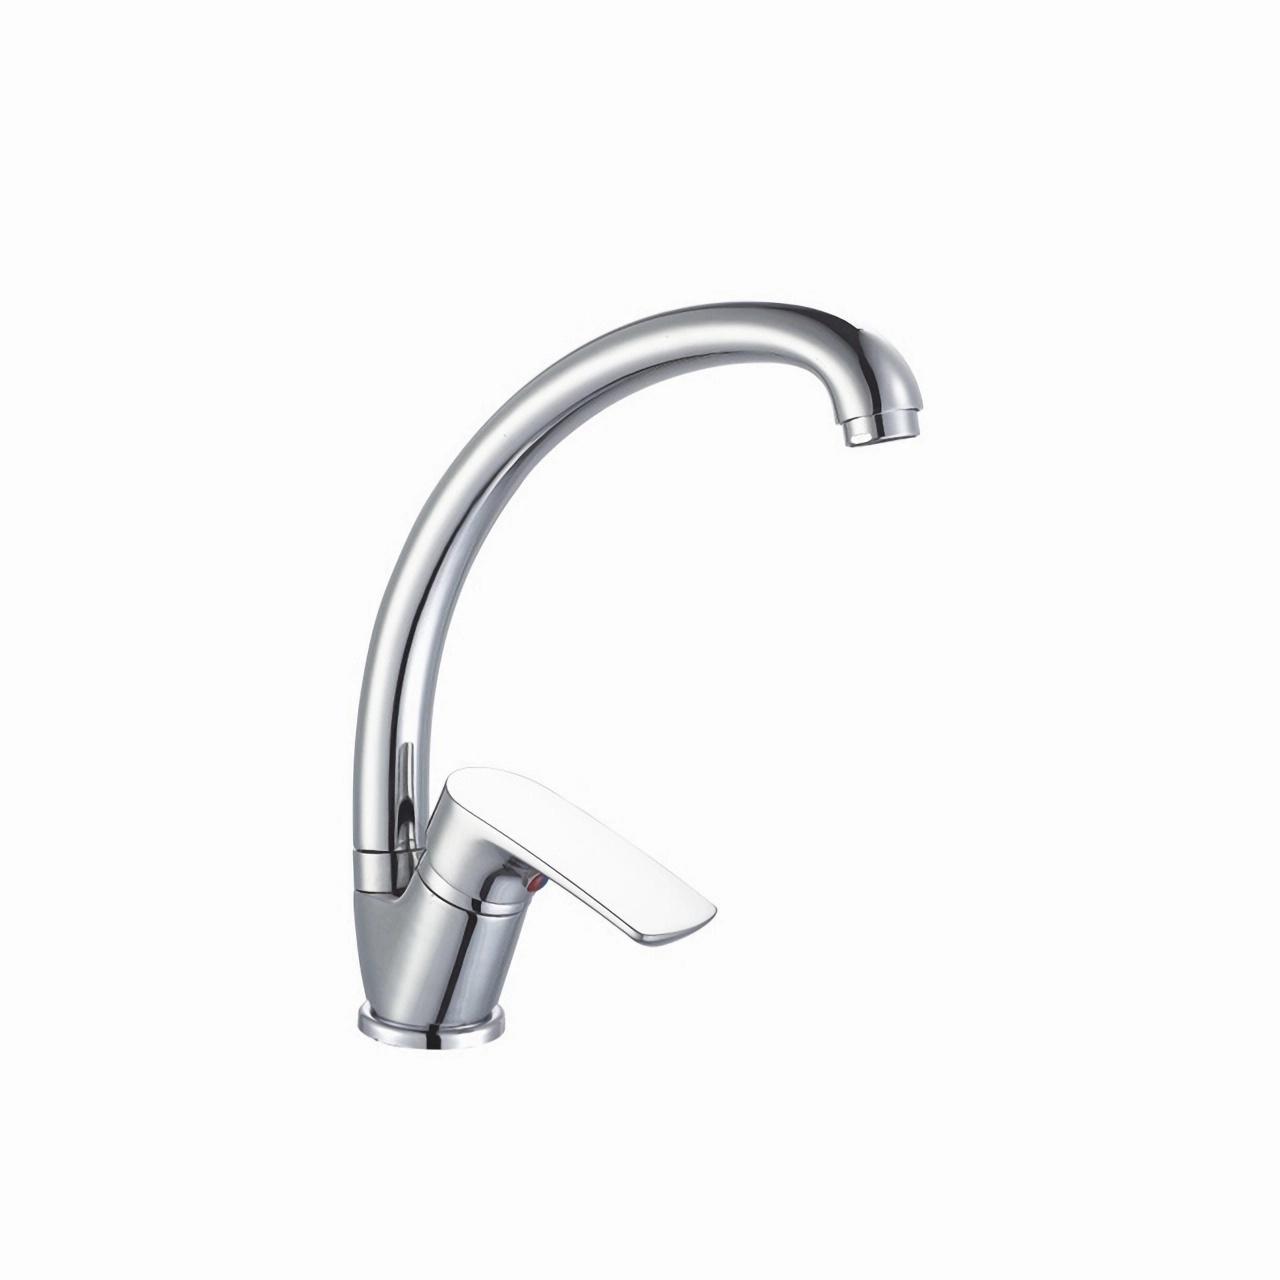 OJ-J0187H Swan Neck Single Lever Round Spout Kitchen Bathroom Faucet Set Chromed Deck Mounted Zinc Alloy Kitchen Faucet